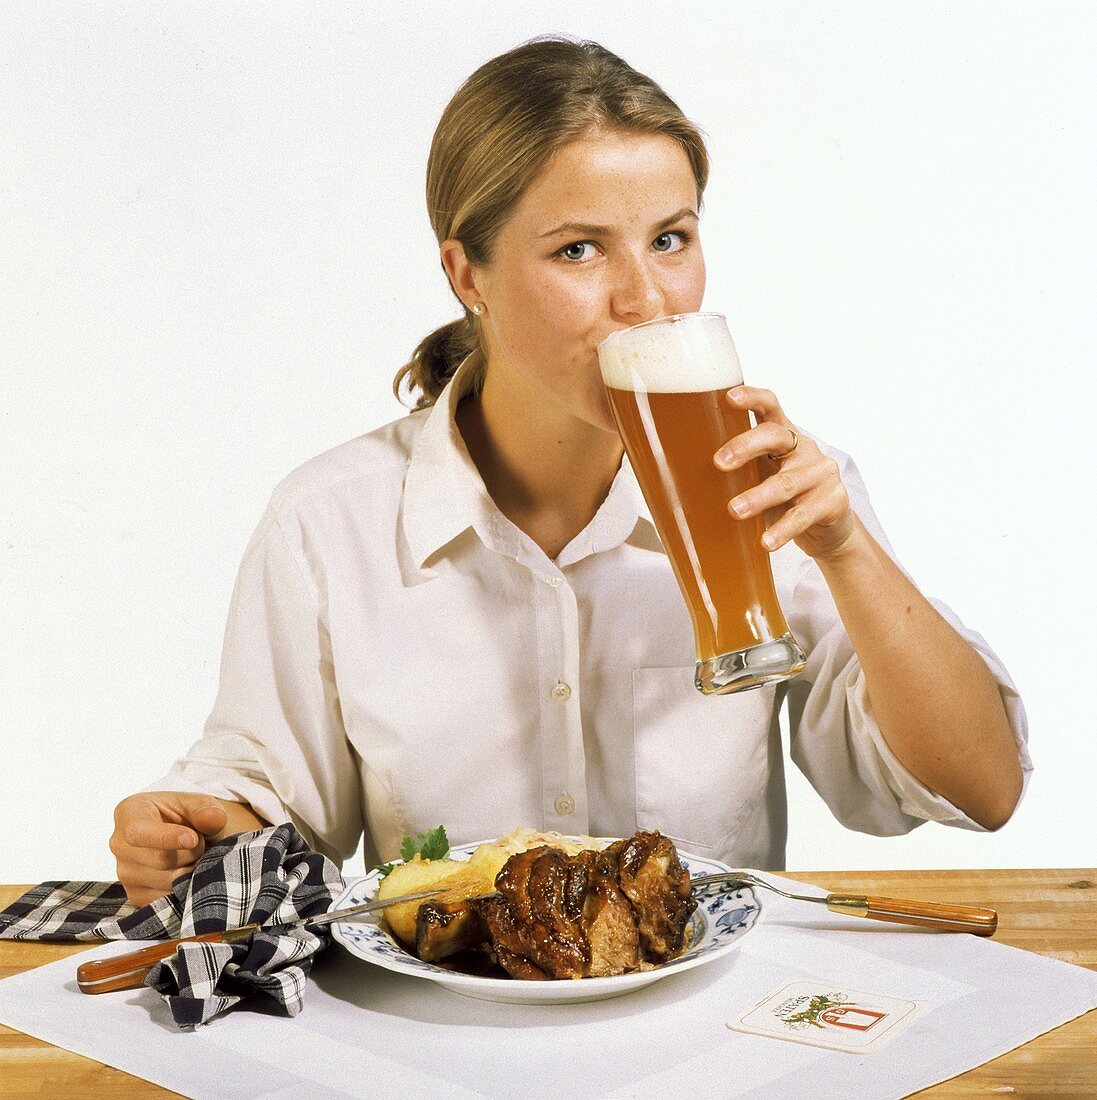 Modell vor Teller mit Schweinshaxe trinkt ein Glas Weißbier